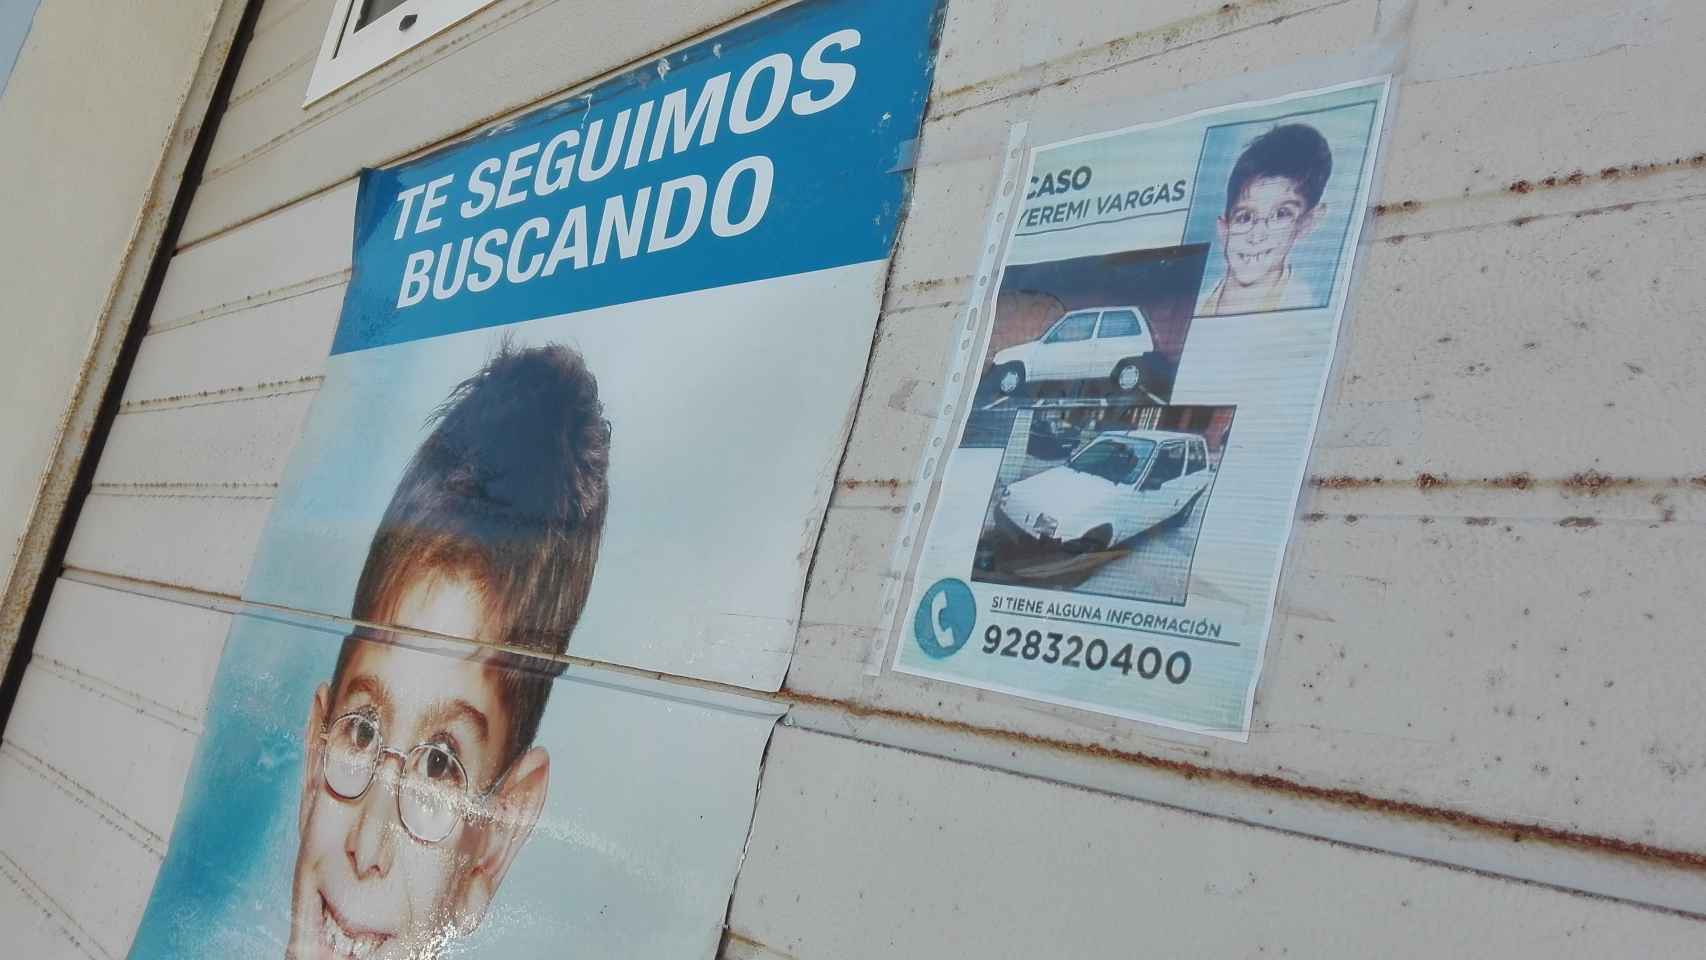 Fachada de la vivienda de los abuelos de Yéremi Vargas, con carteles.